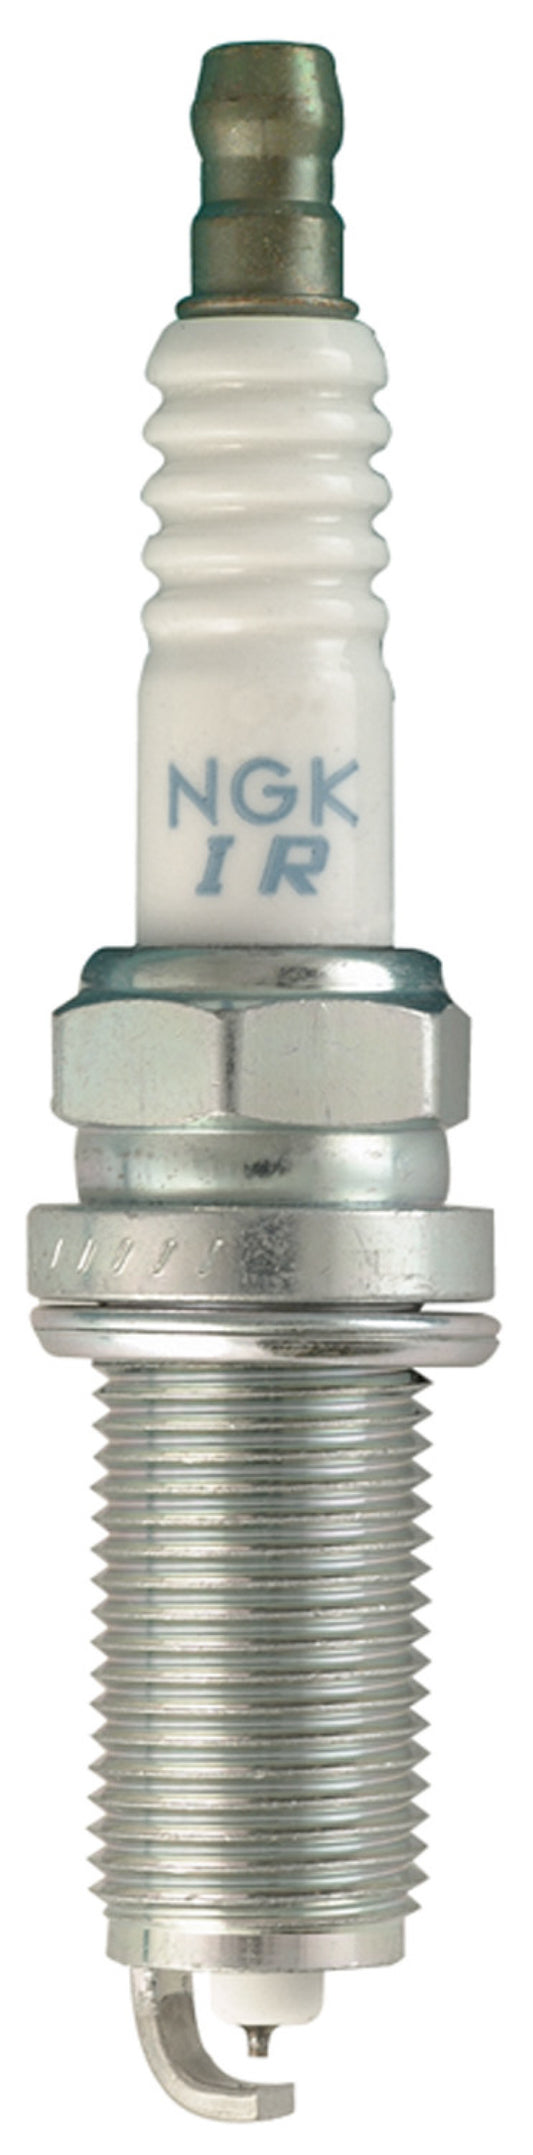 NGK Laser Iridium Spark Plug Box of 4 (ILFR6T11)